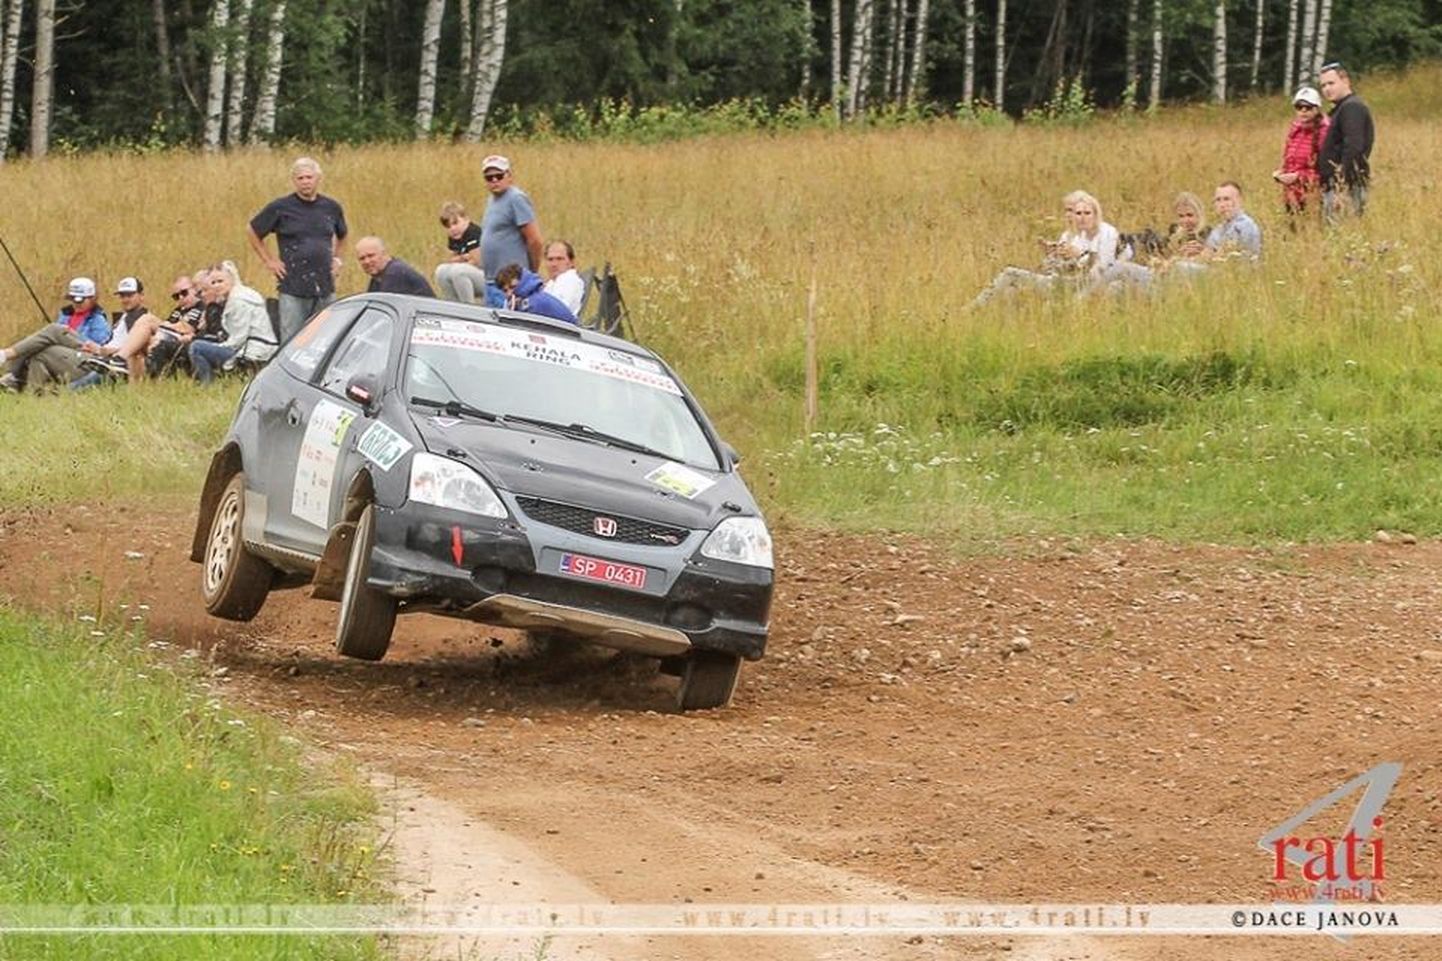 Honda Type-Ril kihutanud Karel Tölbi sõnutsi oli Rally Estonial meeletult pealtvaatajaid. See jättis võistlejatele hea emotsiooni.